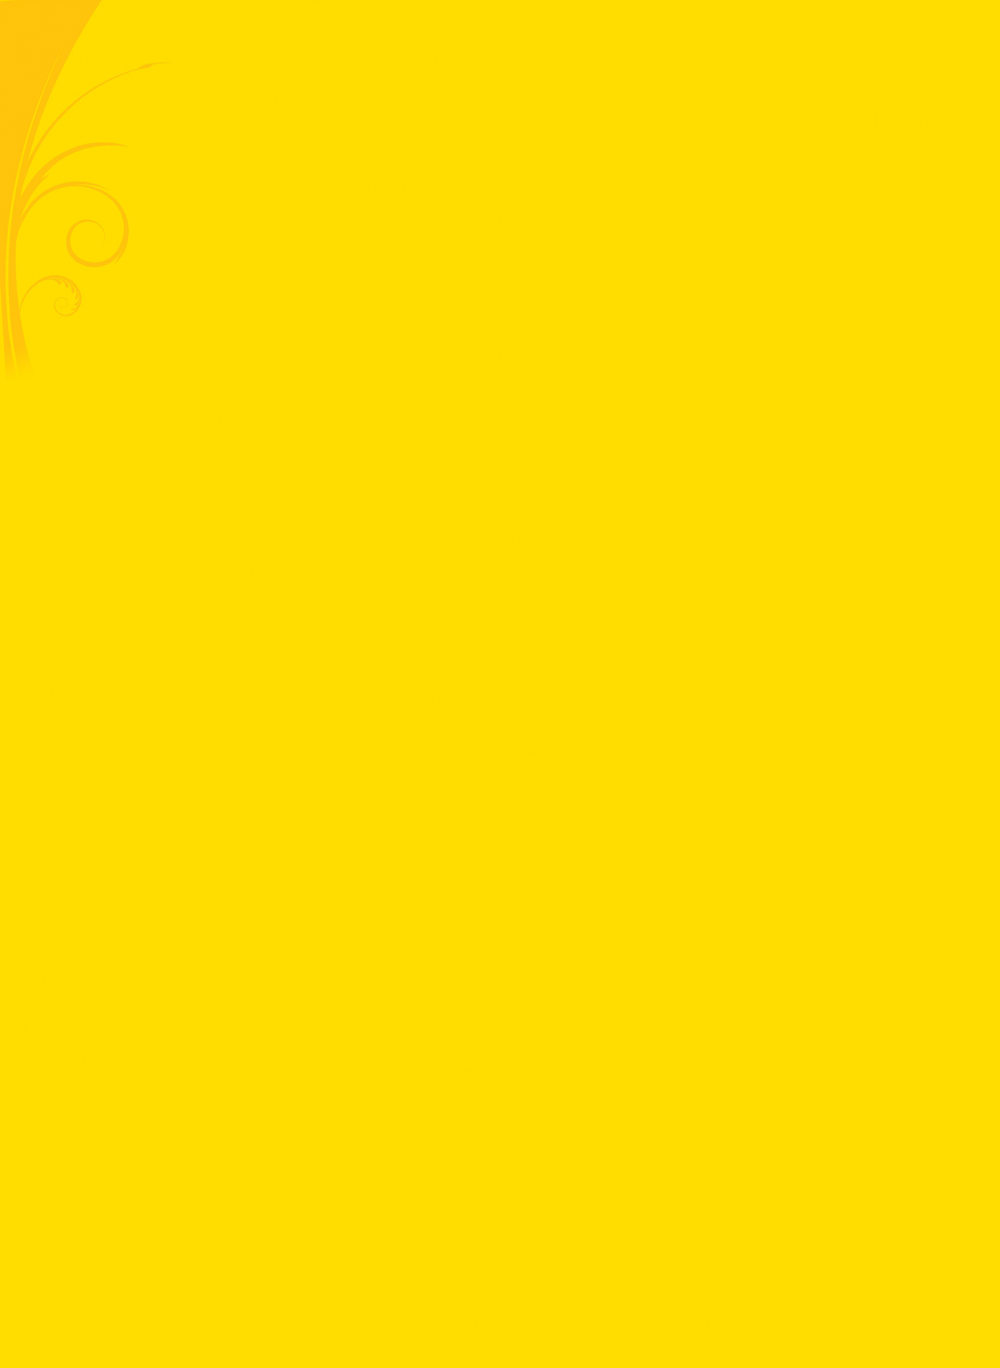 Фон для текста однотонный желтый